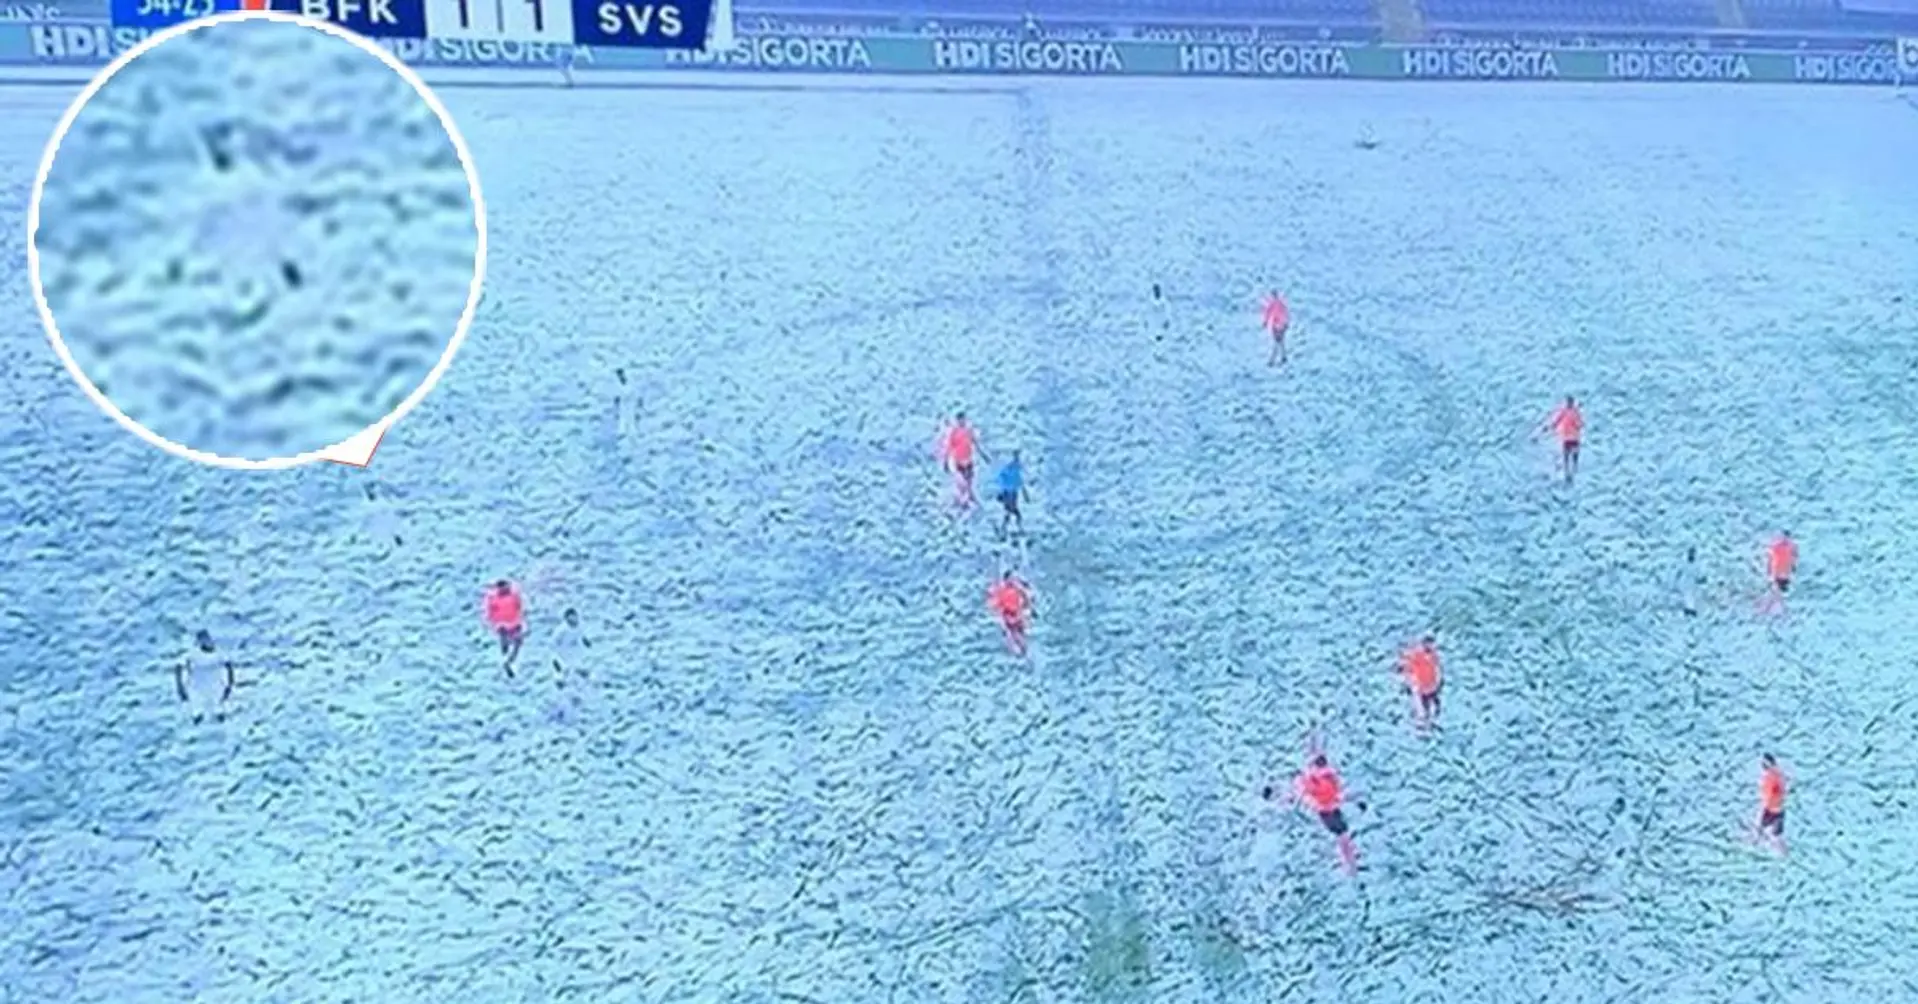 Une équipe turque porte des maillots blancs un jour de neige, les joueurs disparaissent littéralement